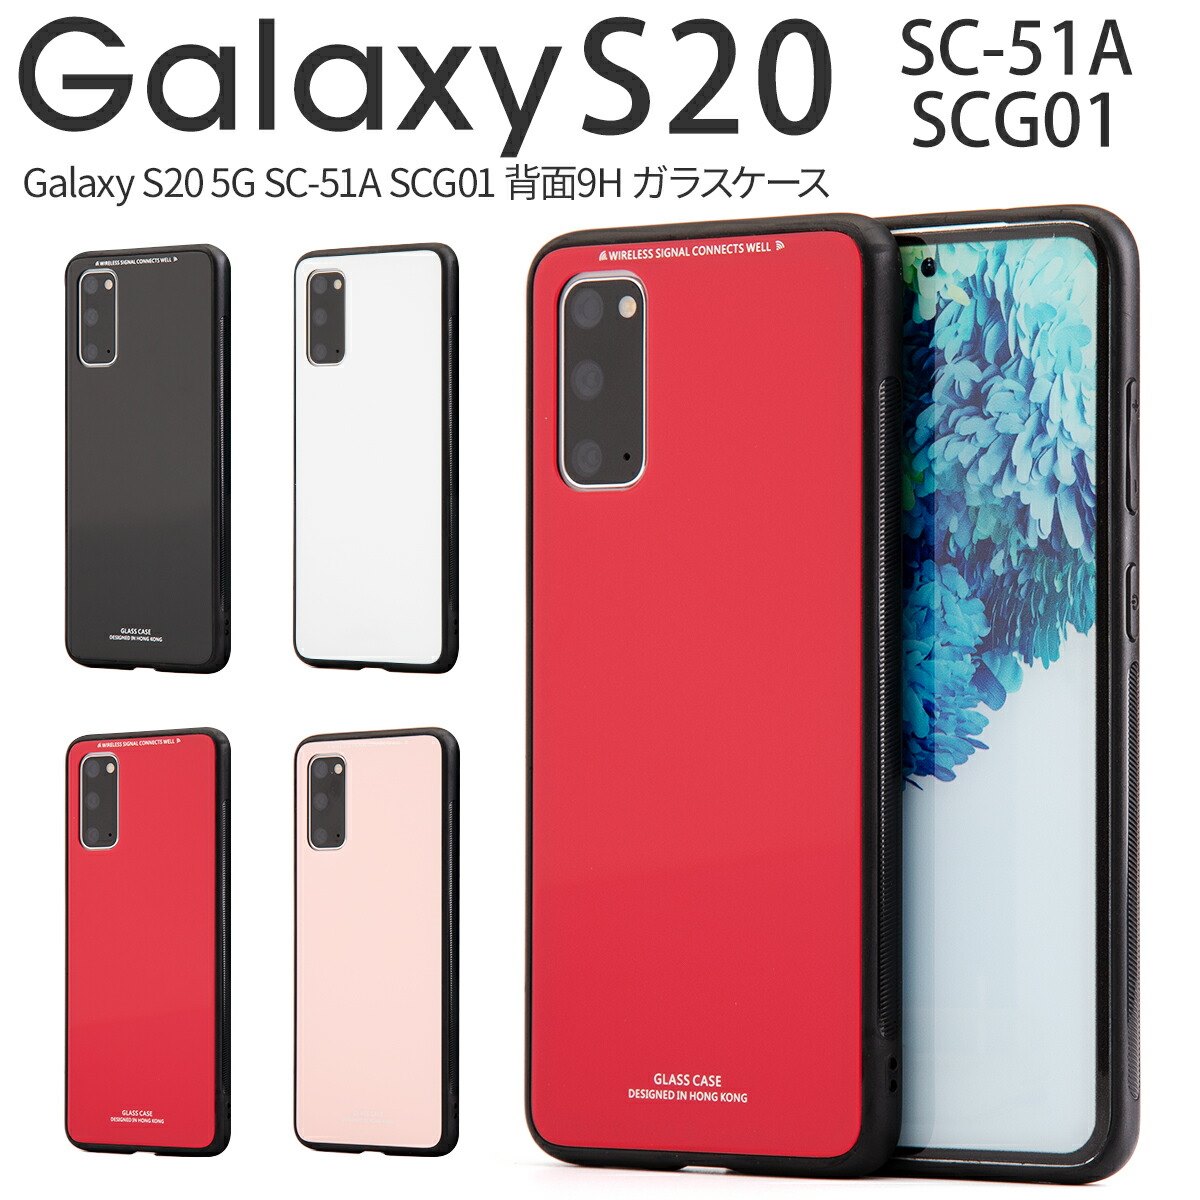 楽天市場 Galaxy S 5g スマホケース 韓国 Sc 51a Scg01 クリスタルケース アンドロイドケース スマホケース ギャラクシー かっこいい おしゃれ 大人 人気 スマホカバー シンプル 背面9hガラスケース 名入れスマホケースエックスモール